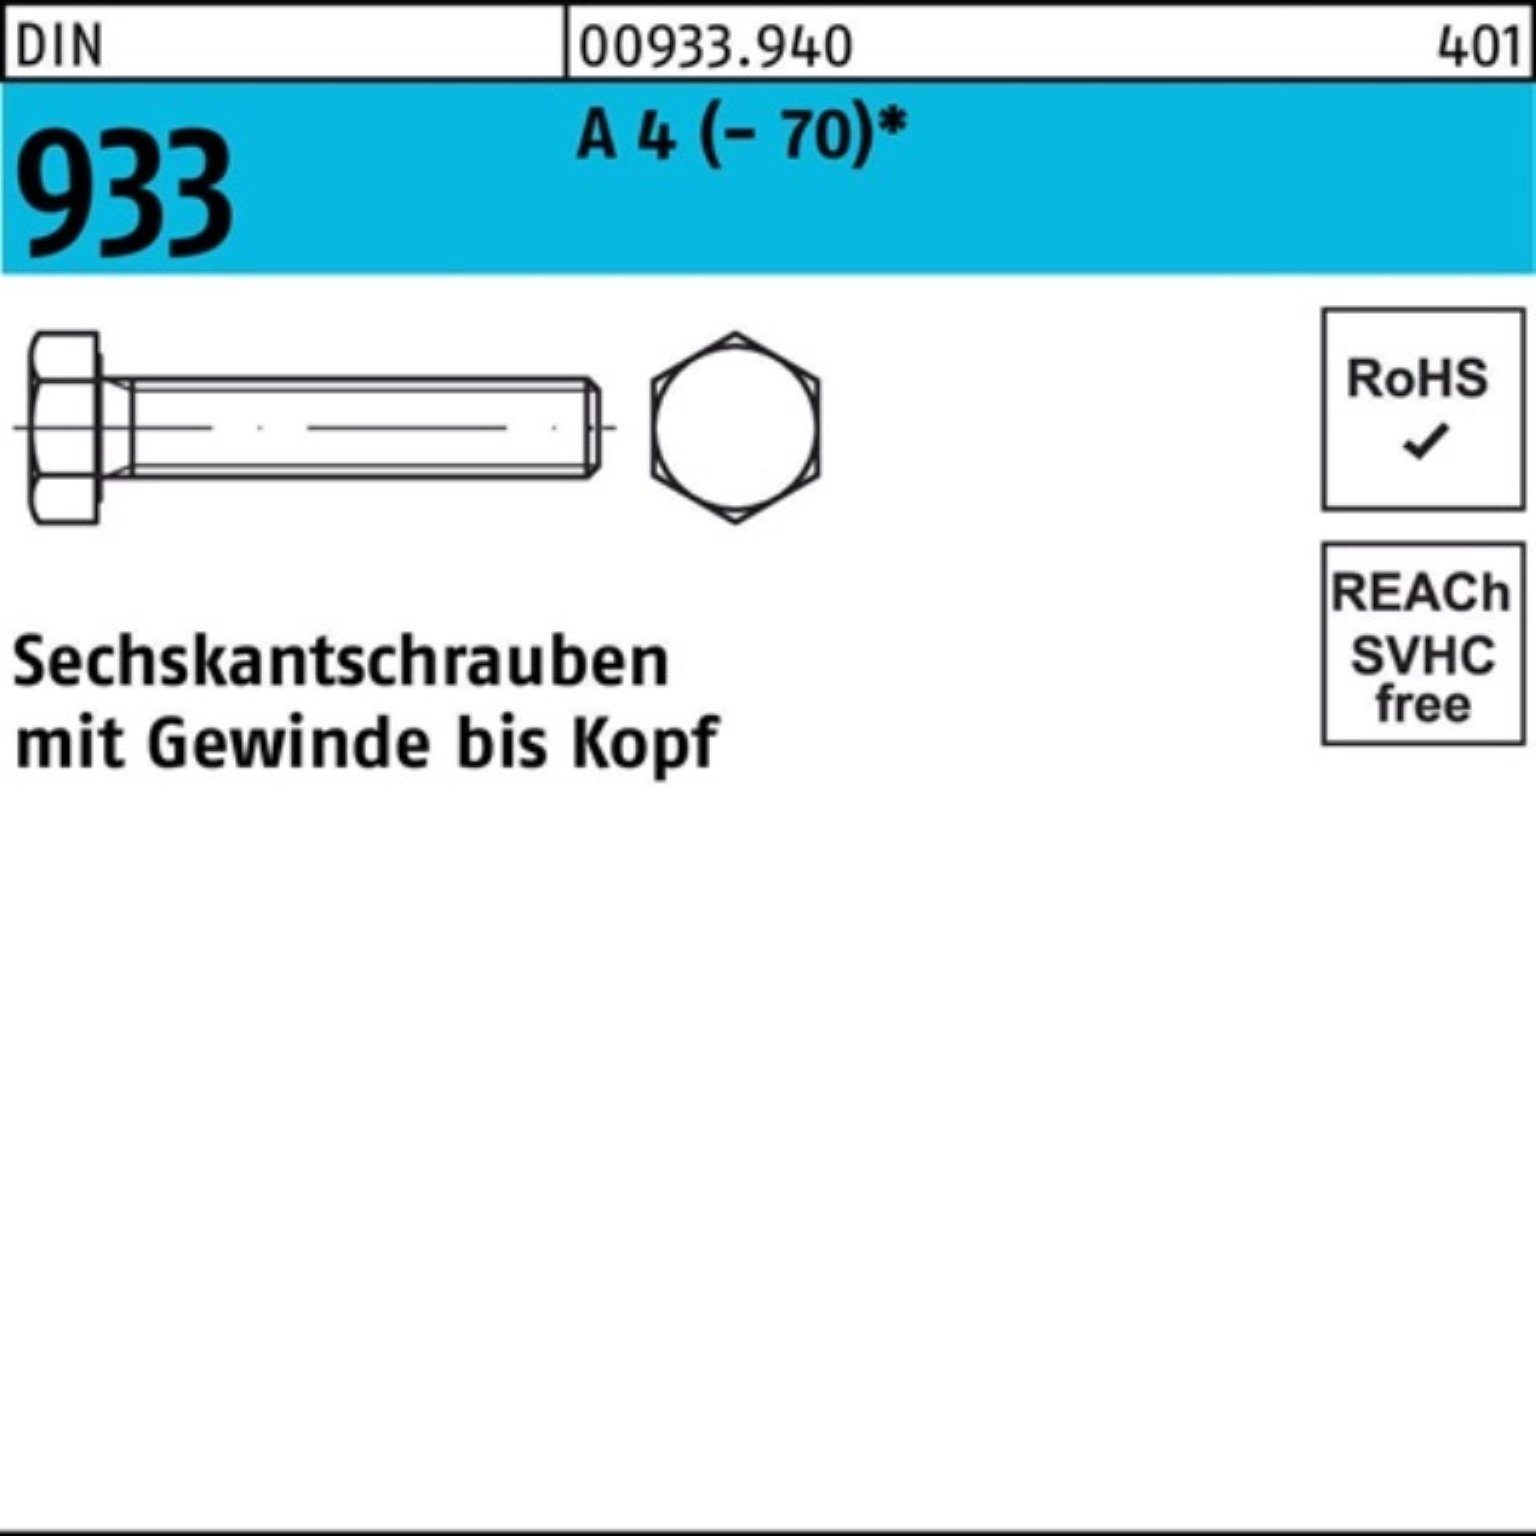 Reyher Sechskantschraube 100er Pack Sechskantschraube 933 DIN A 75 VG 1 M22x 4 Stück (70) DI